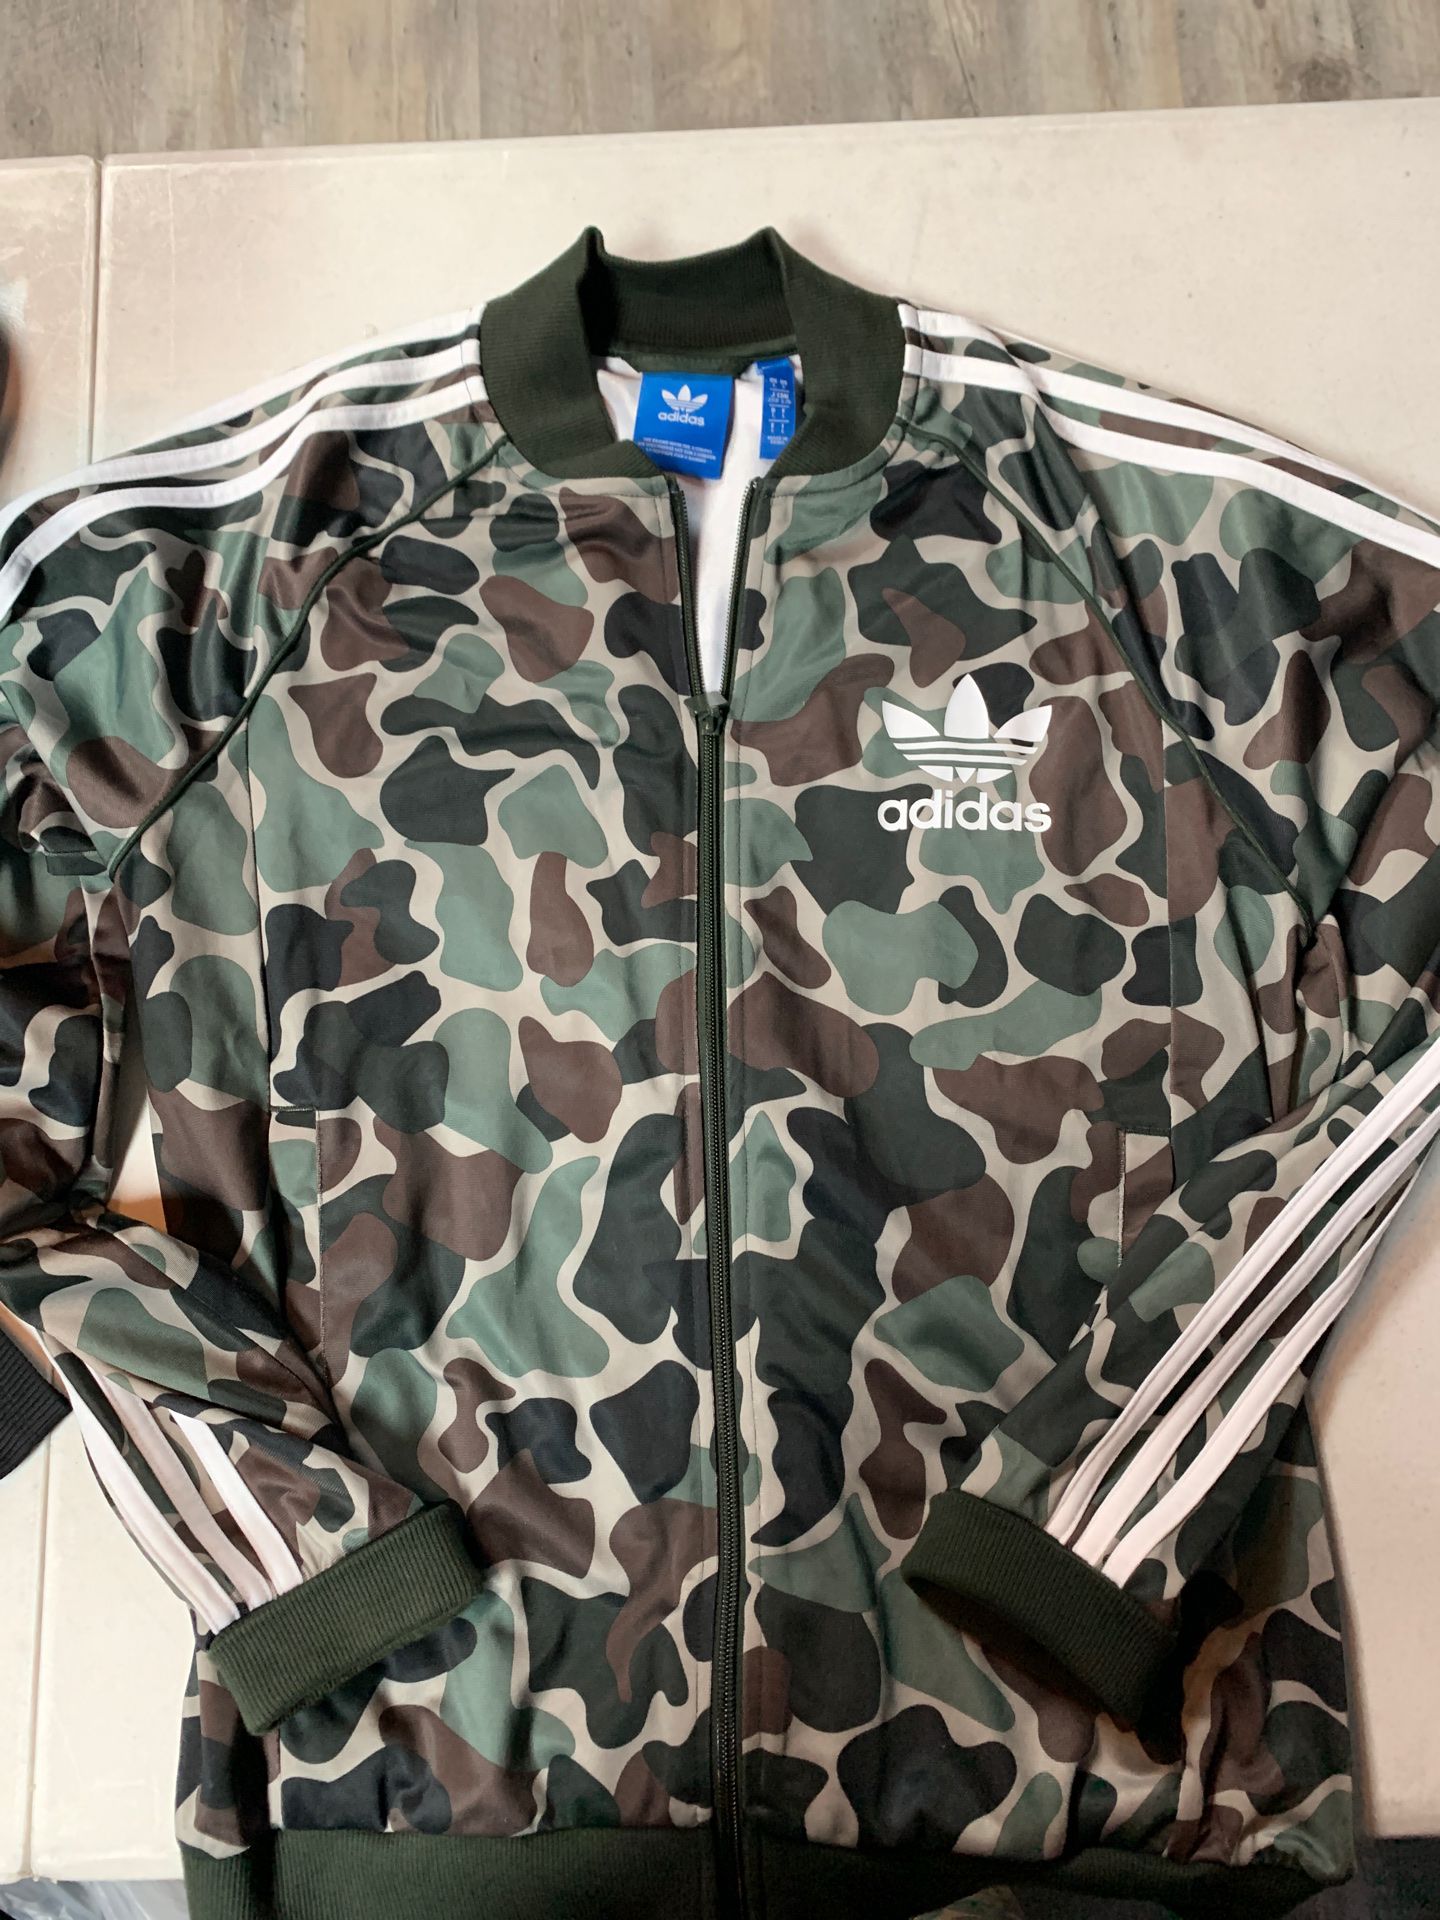 Adidas Jacket Camo Size large